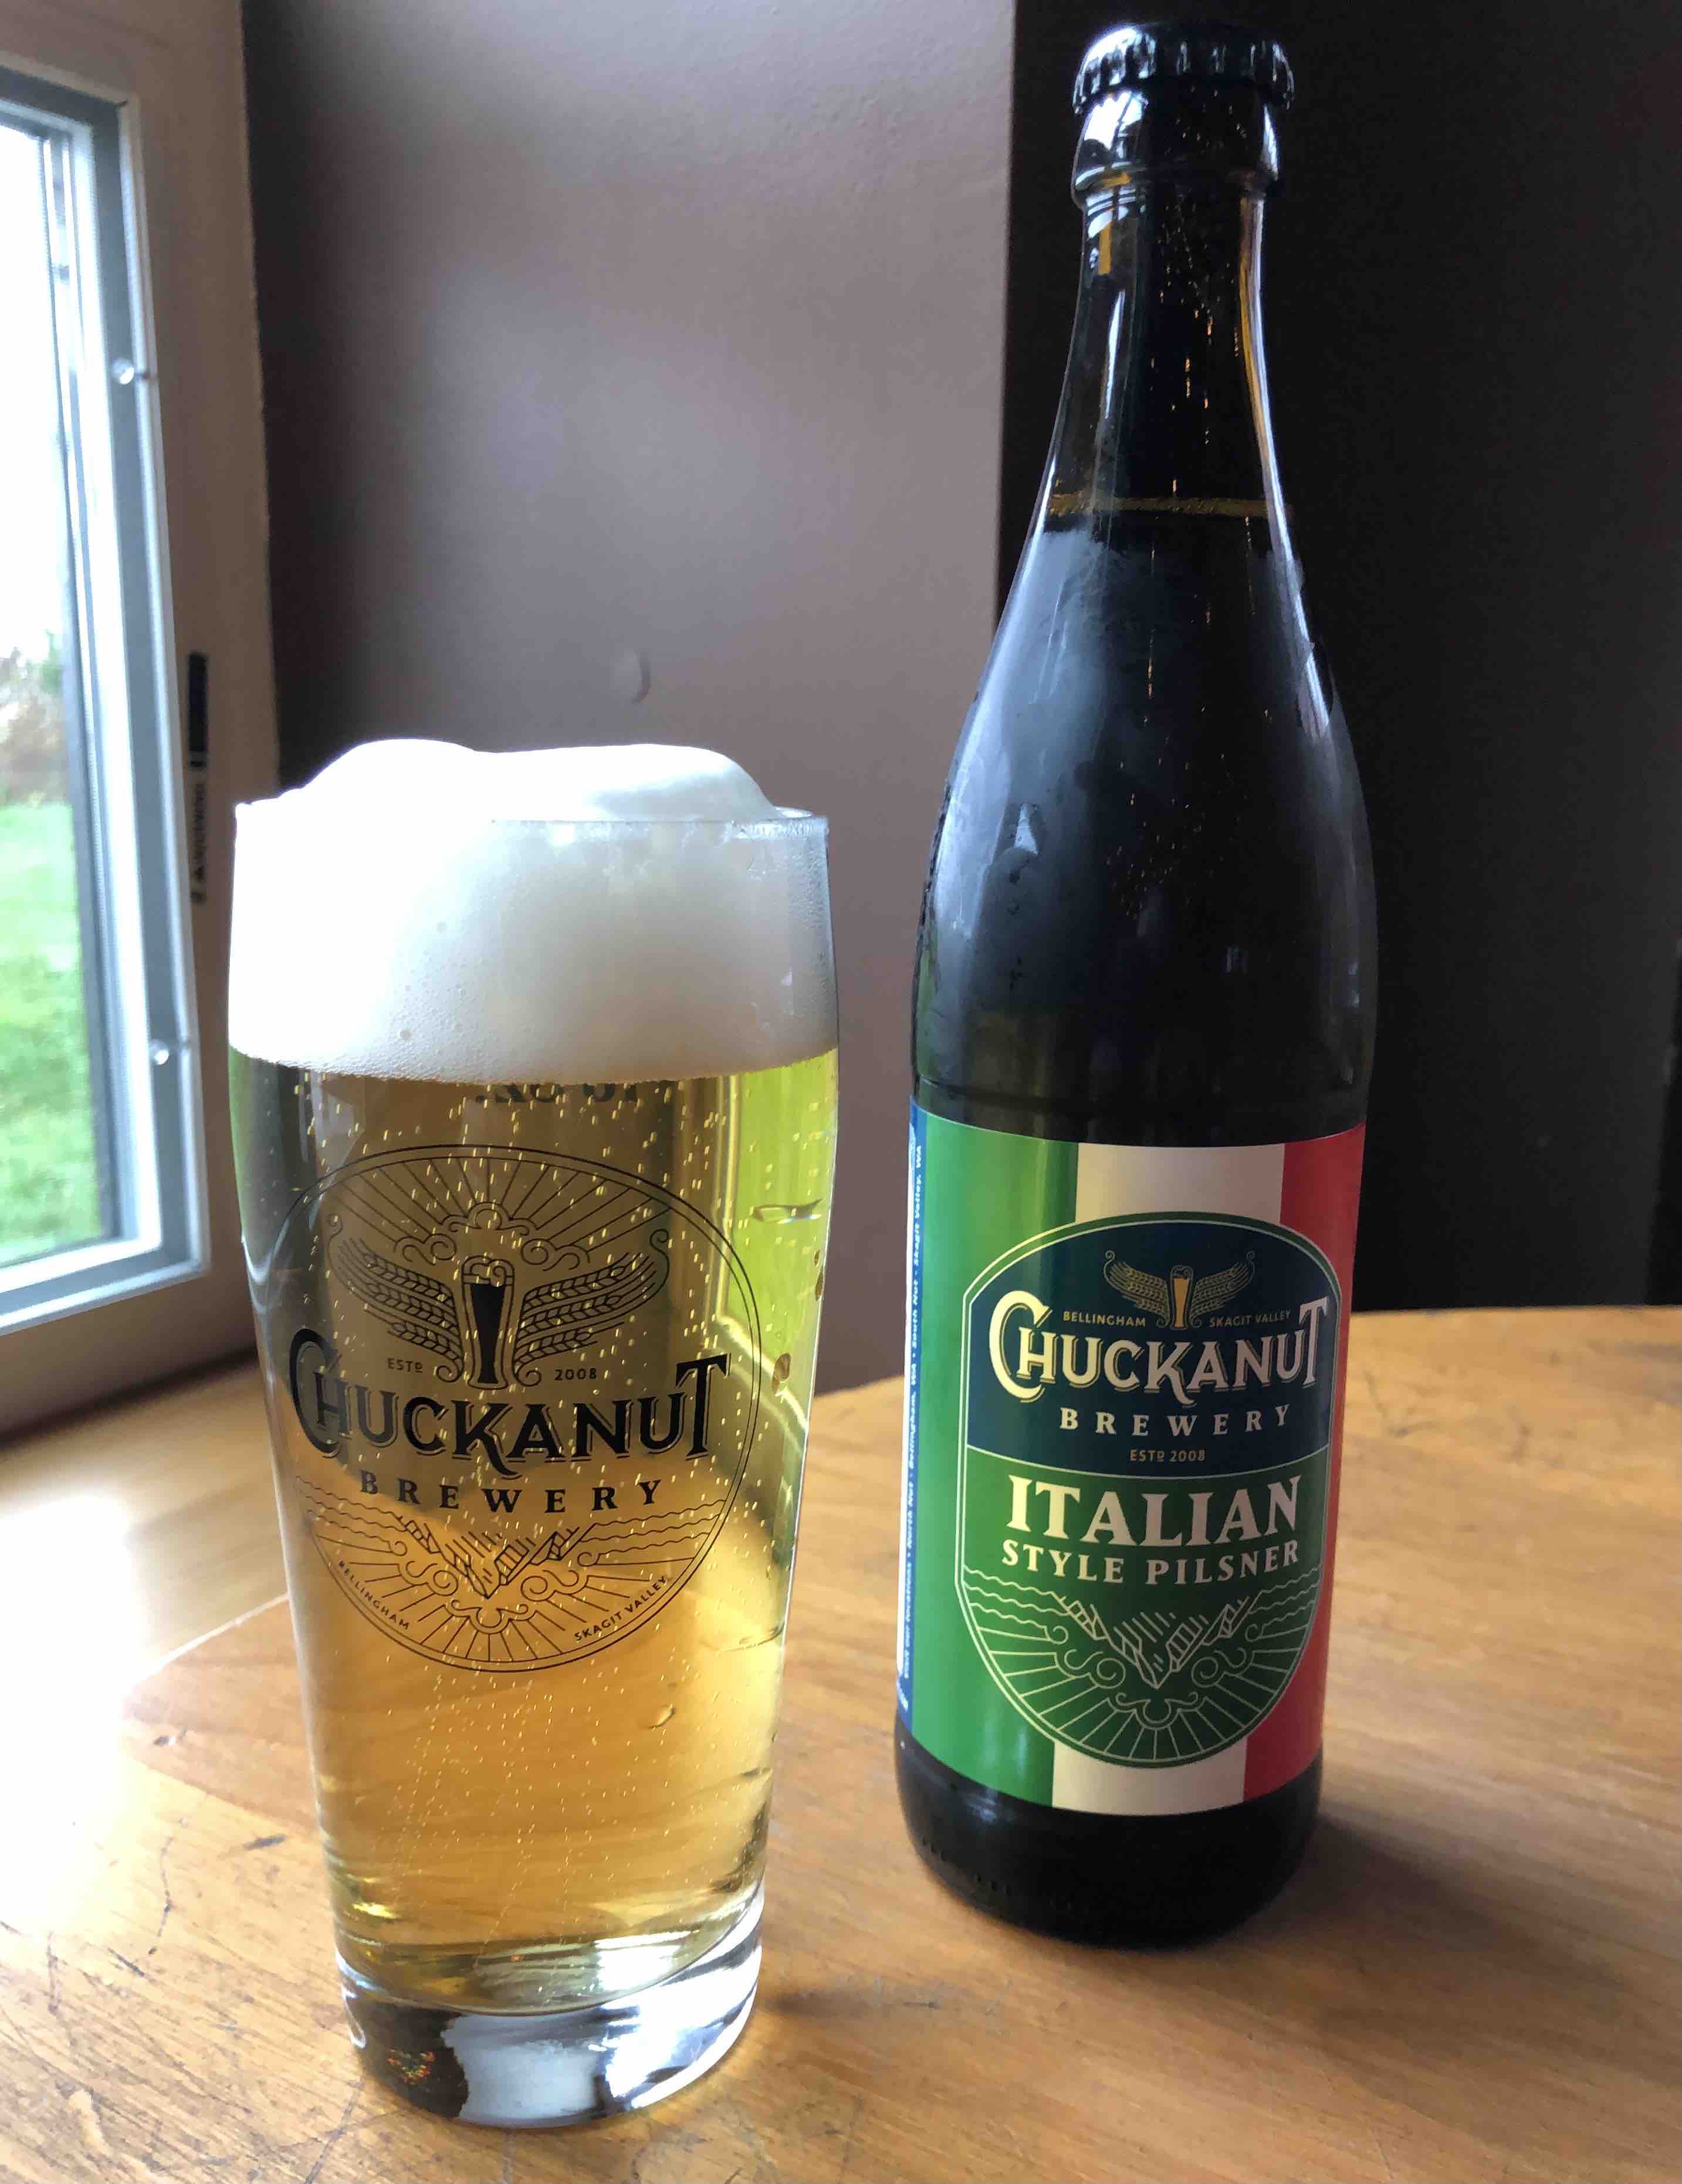 image of Chuckanut Italian Pilsner courtesy of Chuckanut Brewery